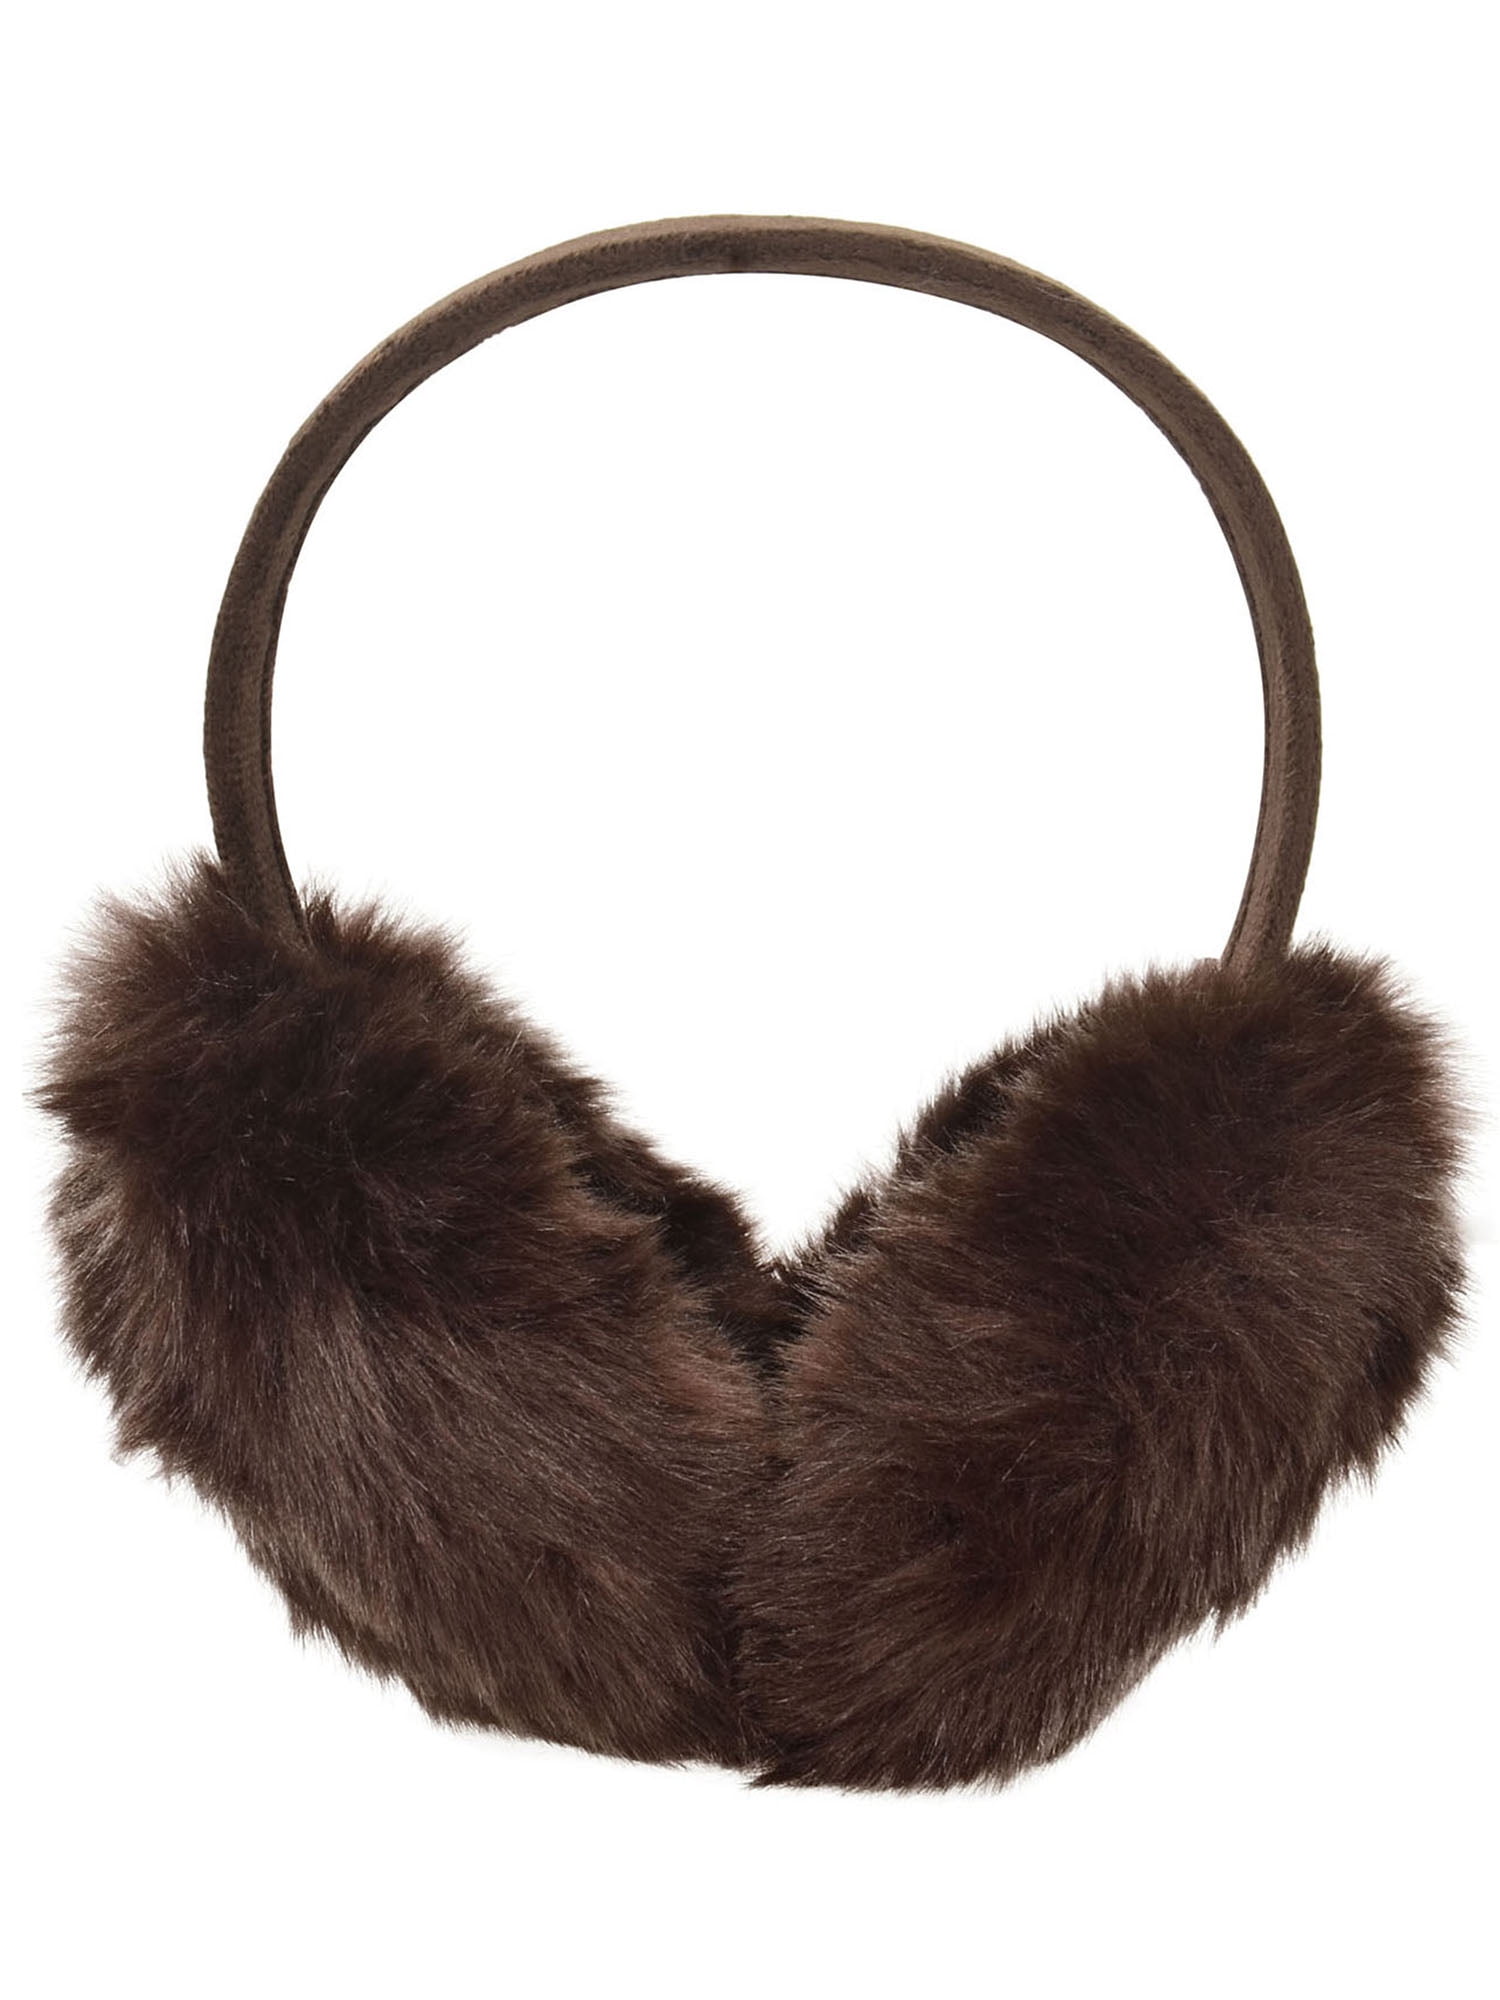 Minsk Belarus National Emblem Winter Earmuffs Ear Warmers Faux Fur Foldable Plush Outdoor Gift